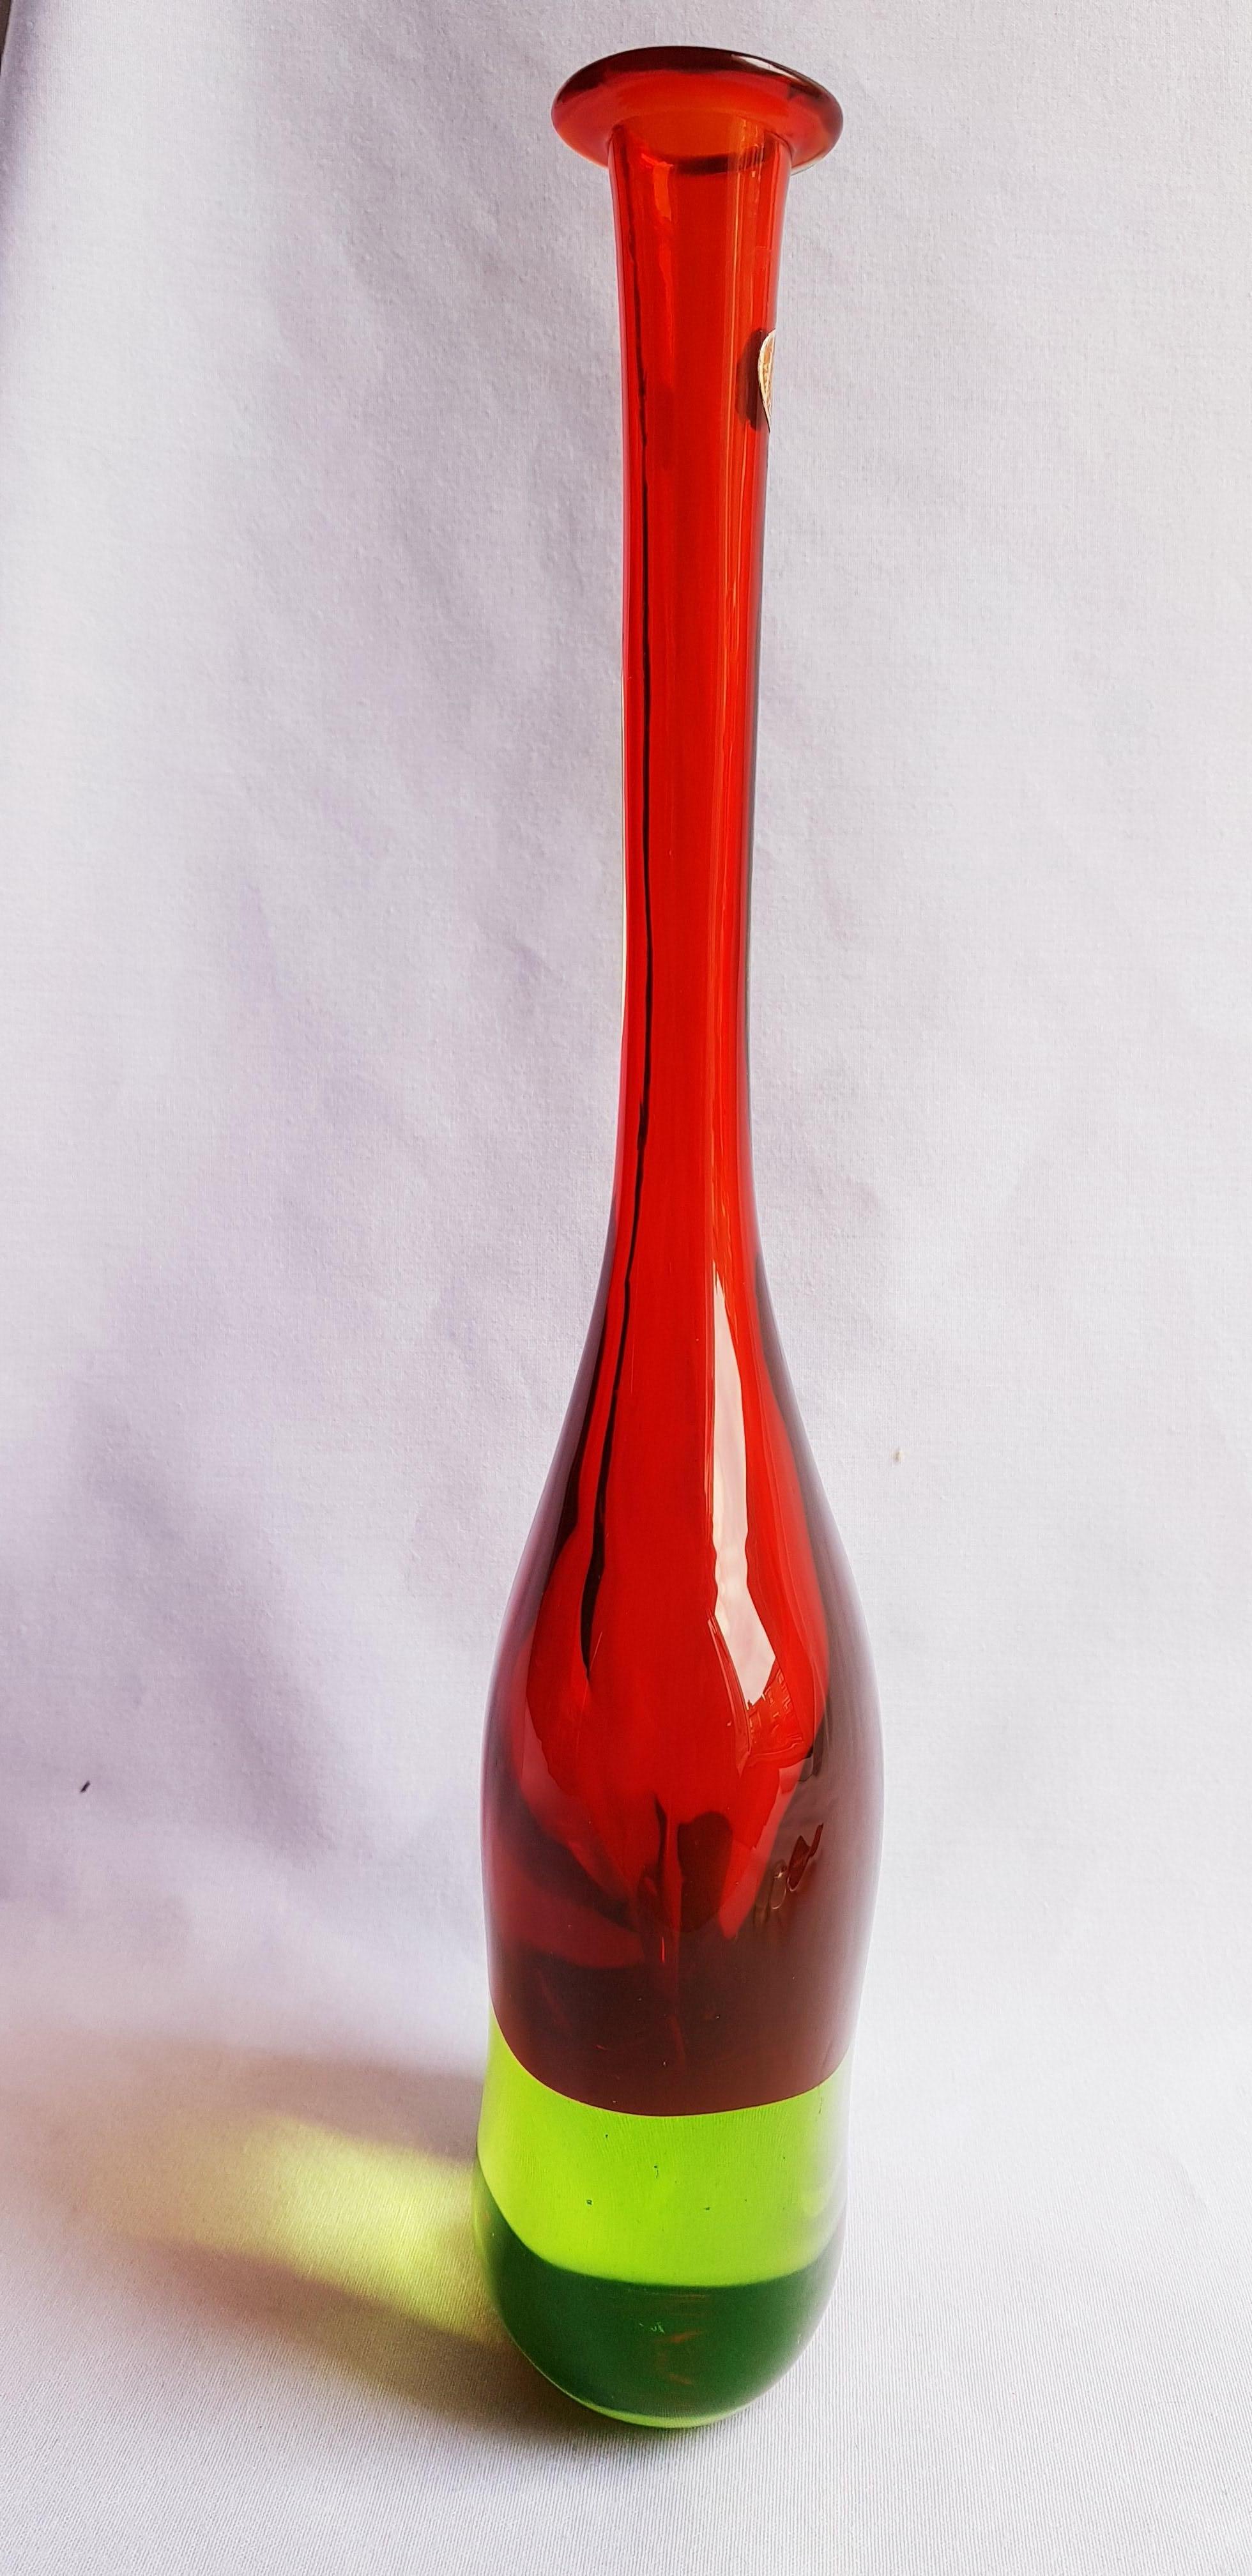 Antonio da Ros for Seguso vetri D'arte large uranium Bottle (50cm)  For Sale 2